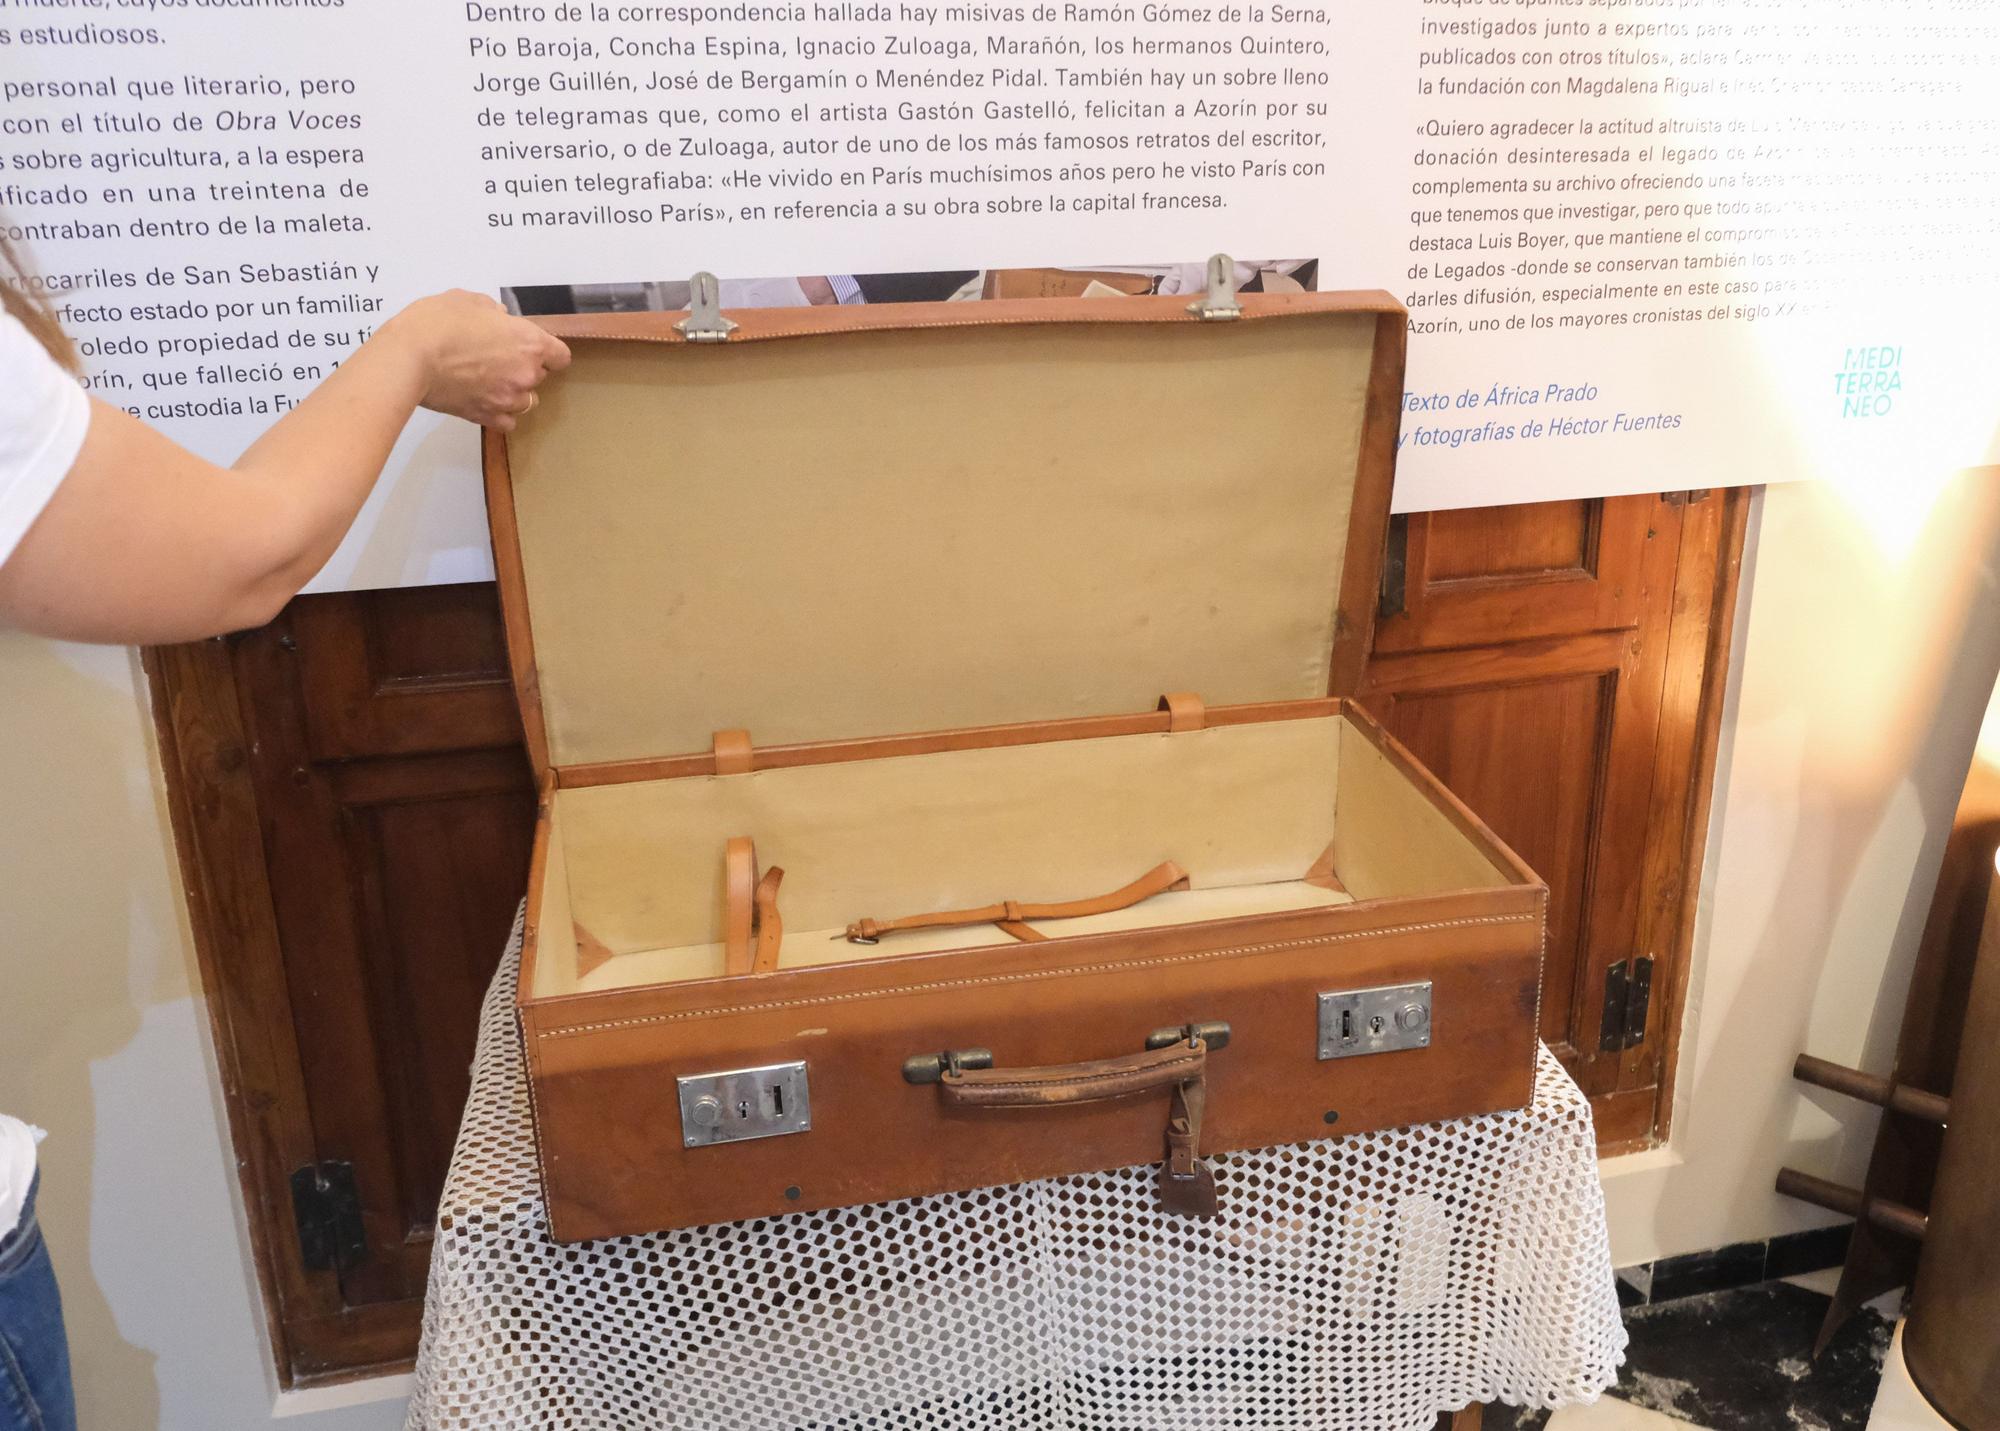 La maleta de Azorín, un tesoro al descubierto